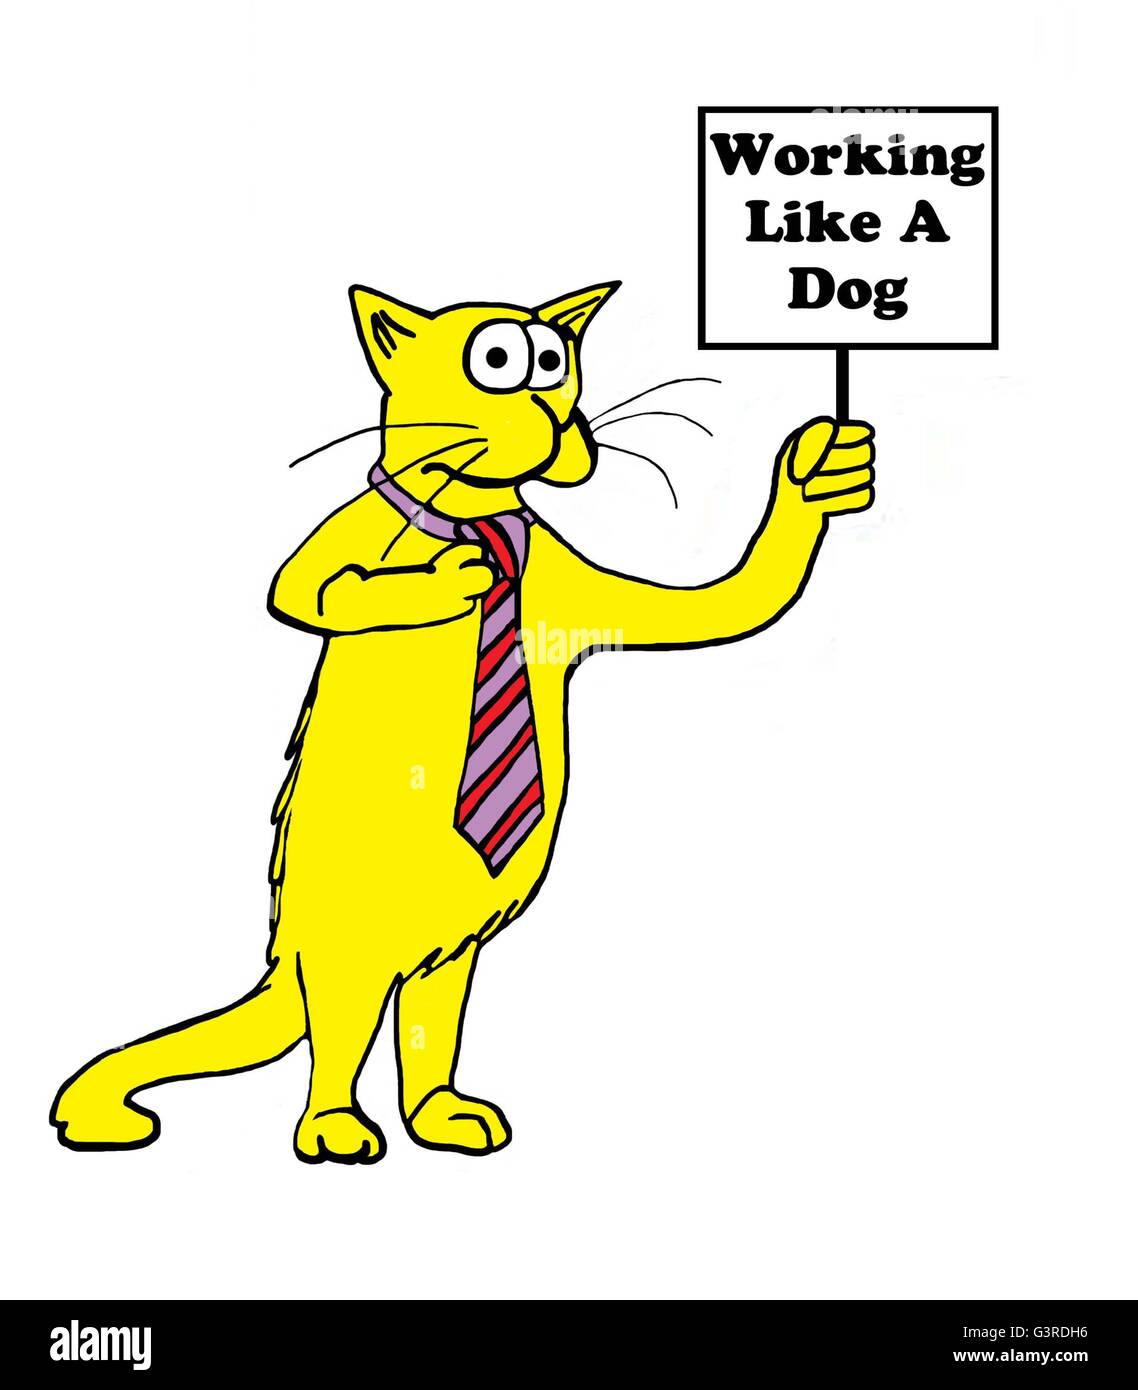 Tier und Business cartoon über eine Katze, die wie ein Hund funktioniert. Stockfoto